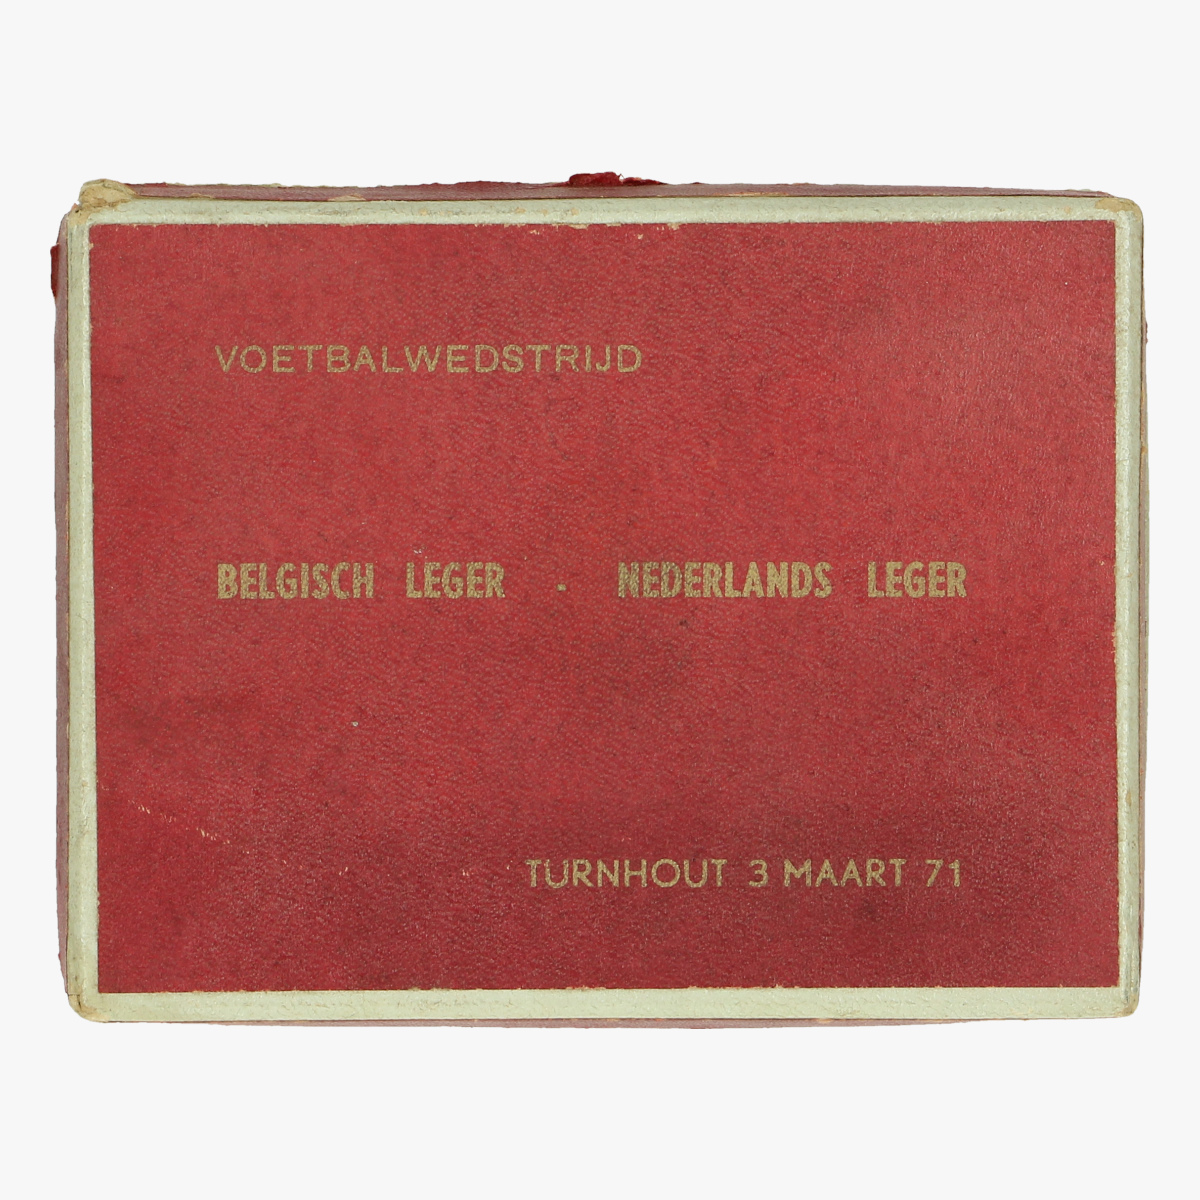 Afbeeldingen van kartonnen doosje met foto voetbalwedstrijd belgisch leger - Nederlands leger turnhout 31 maart 1971 